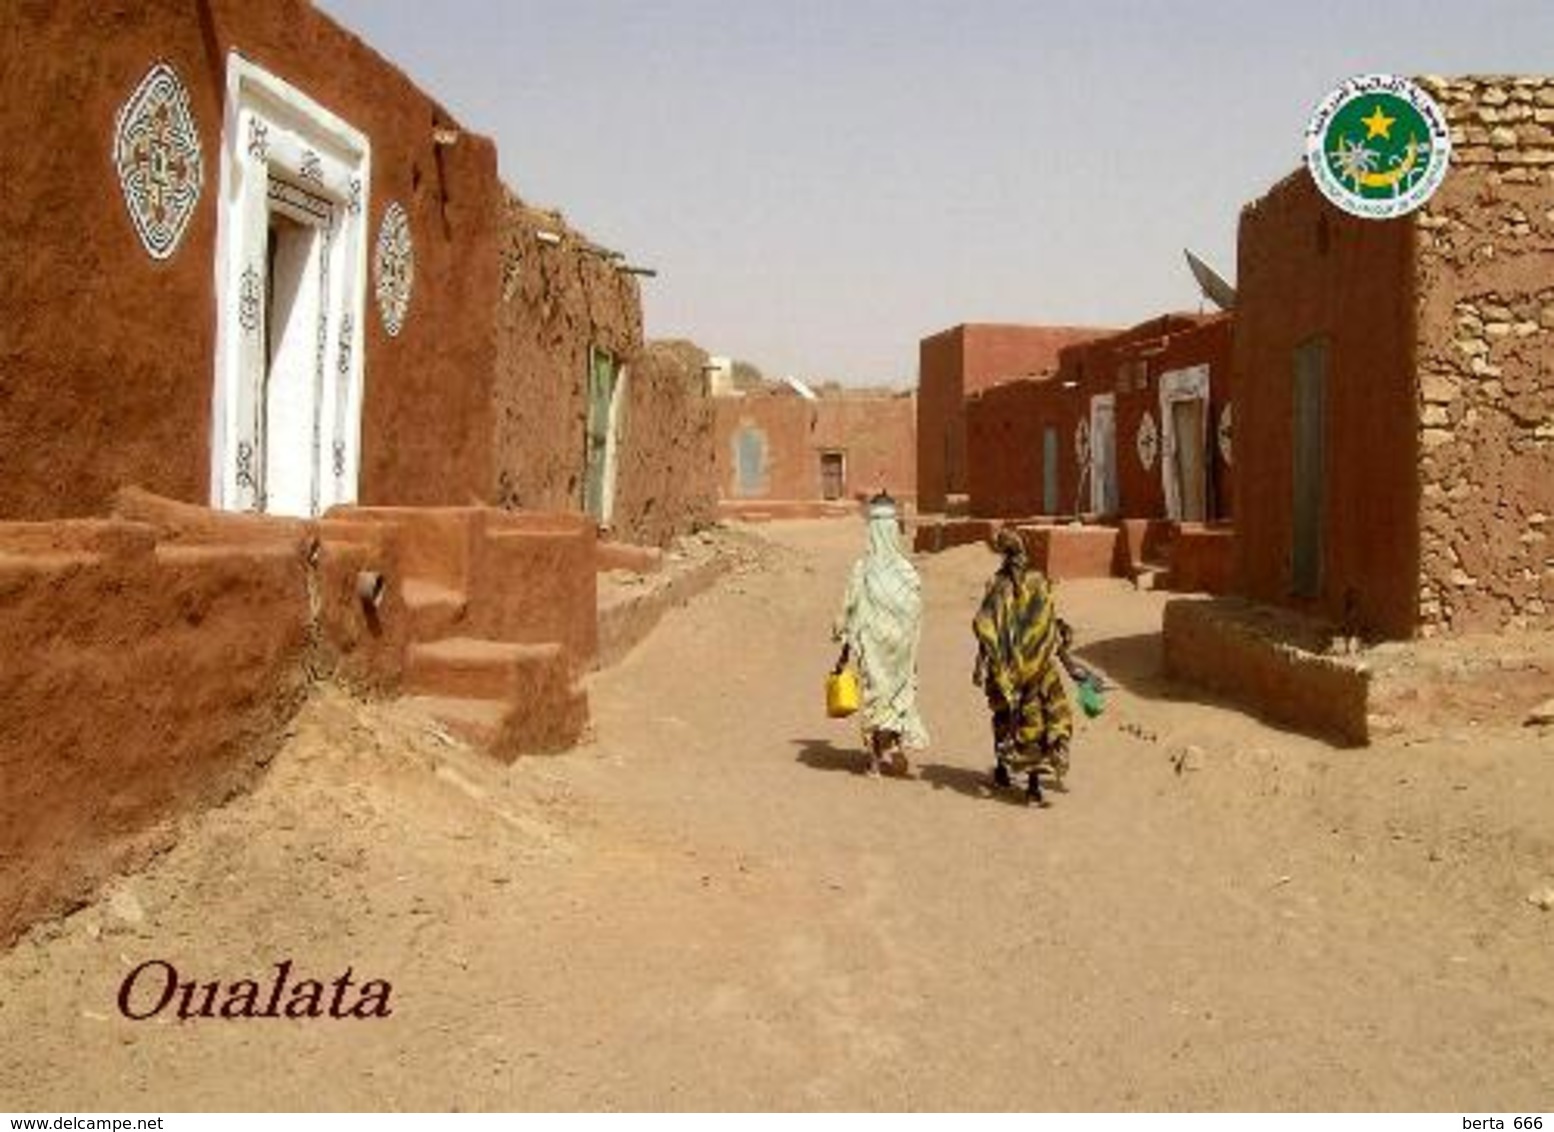 Mauritania Oualata View UNESCO New Postcard Mauretanien AK - Mauretanien